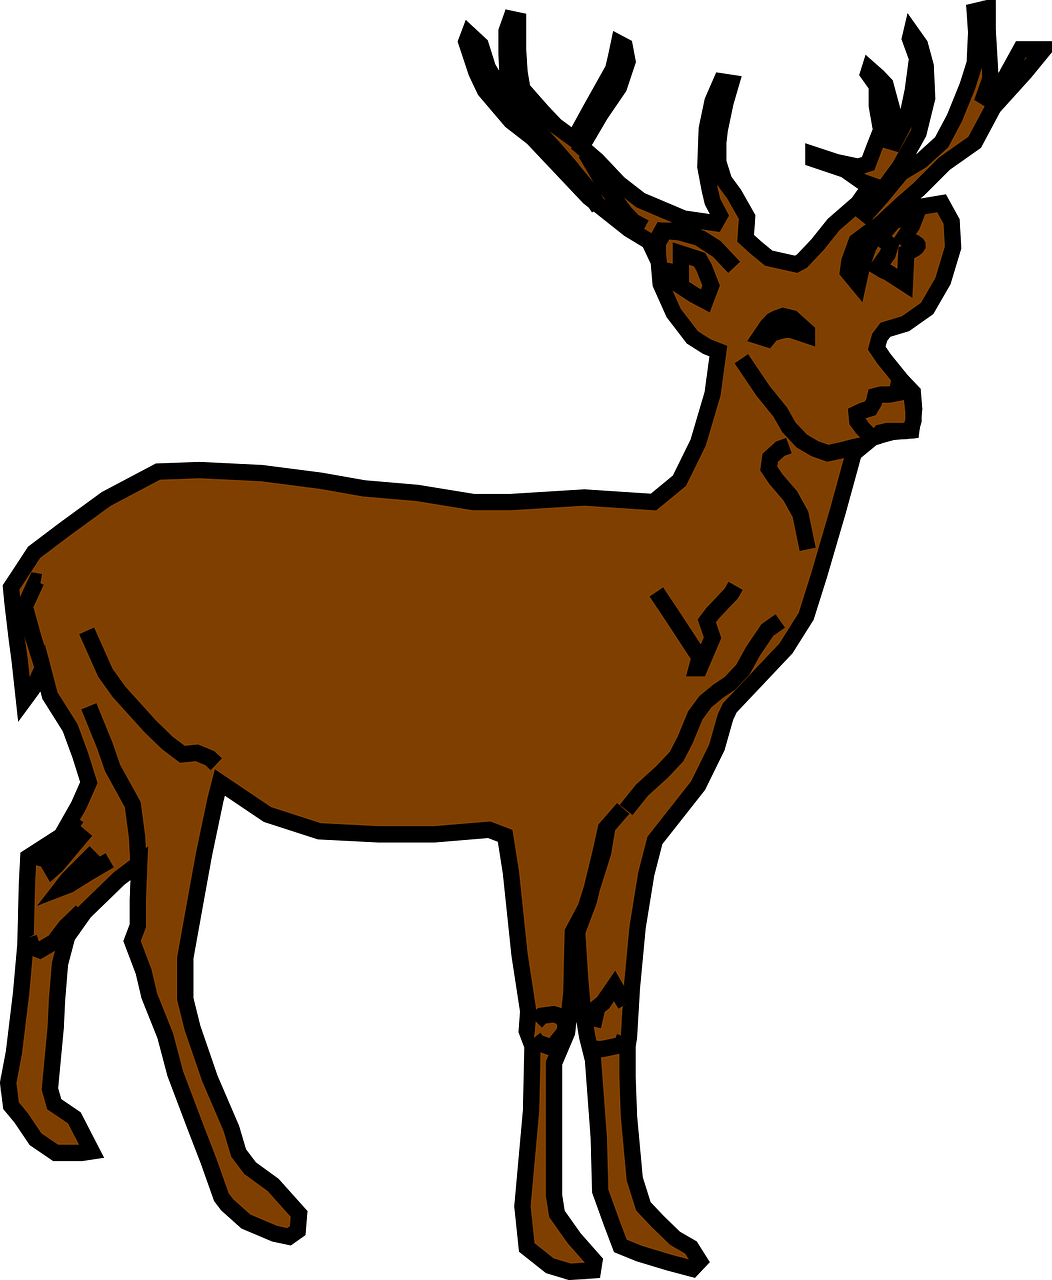 Reindeer animal stag png. Deer clipart winter